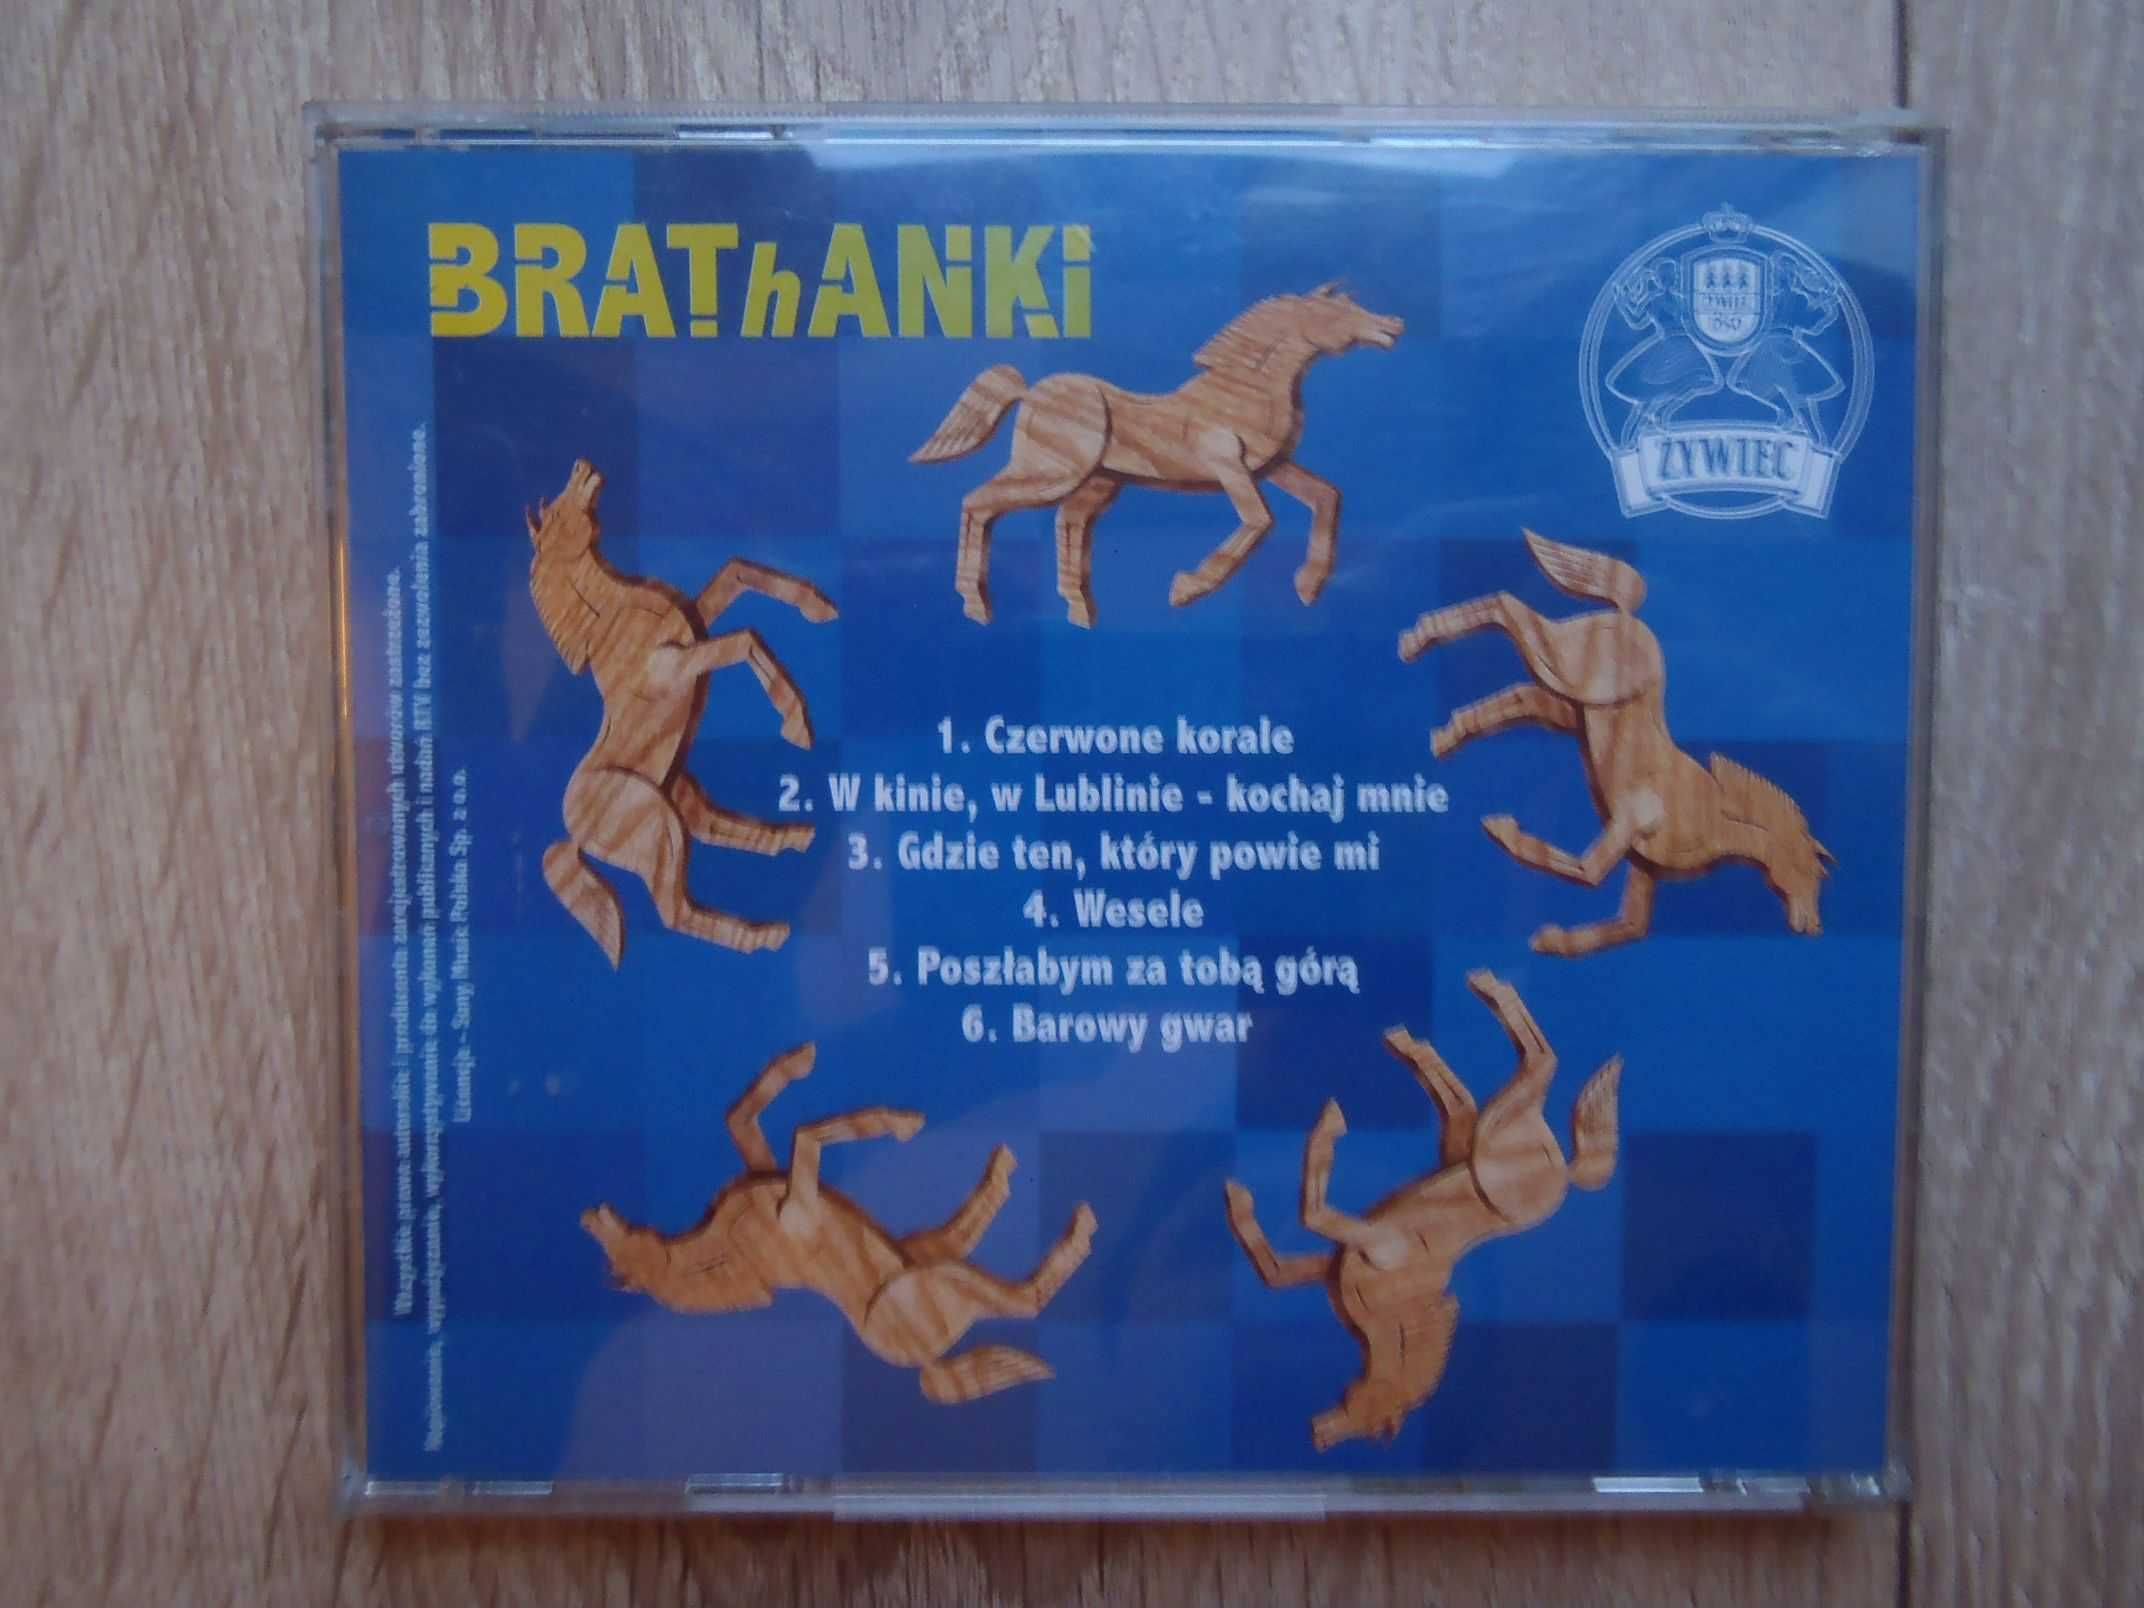 Brathanki - Same przeboje oraz premiera - Żywiecka piosenka